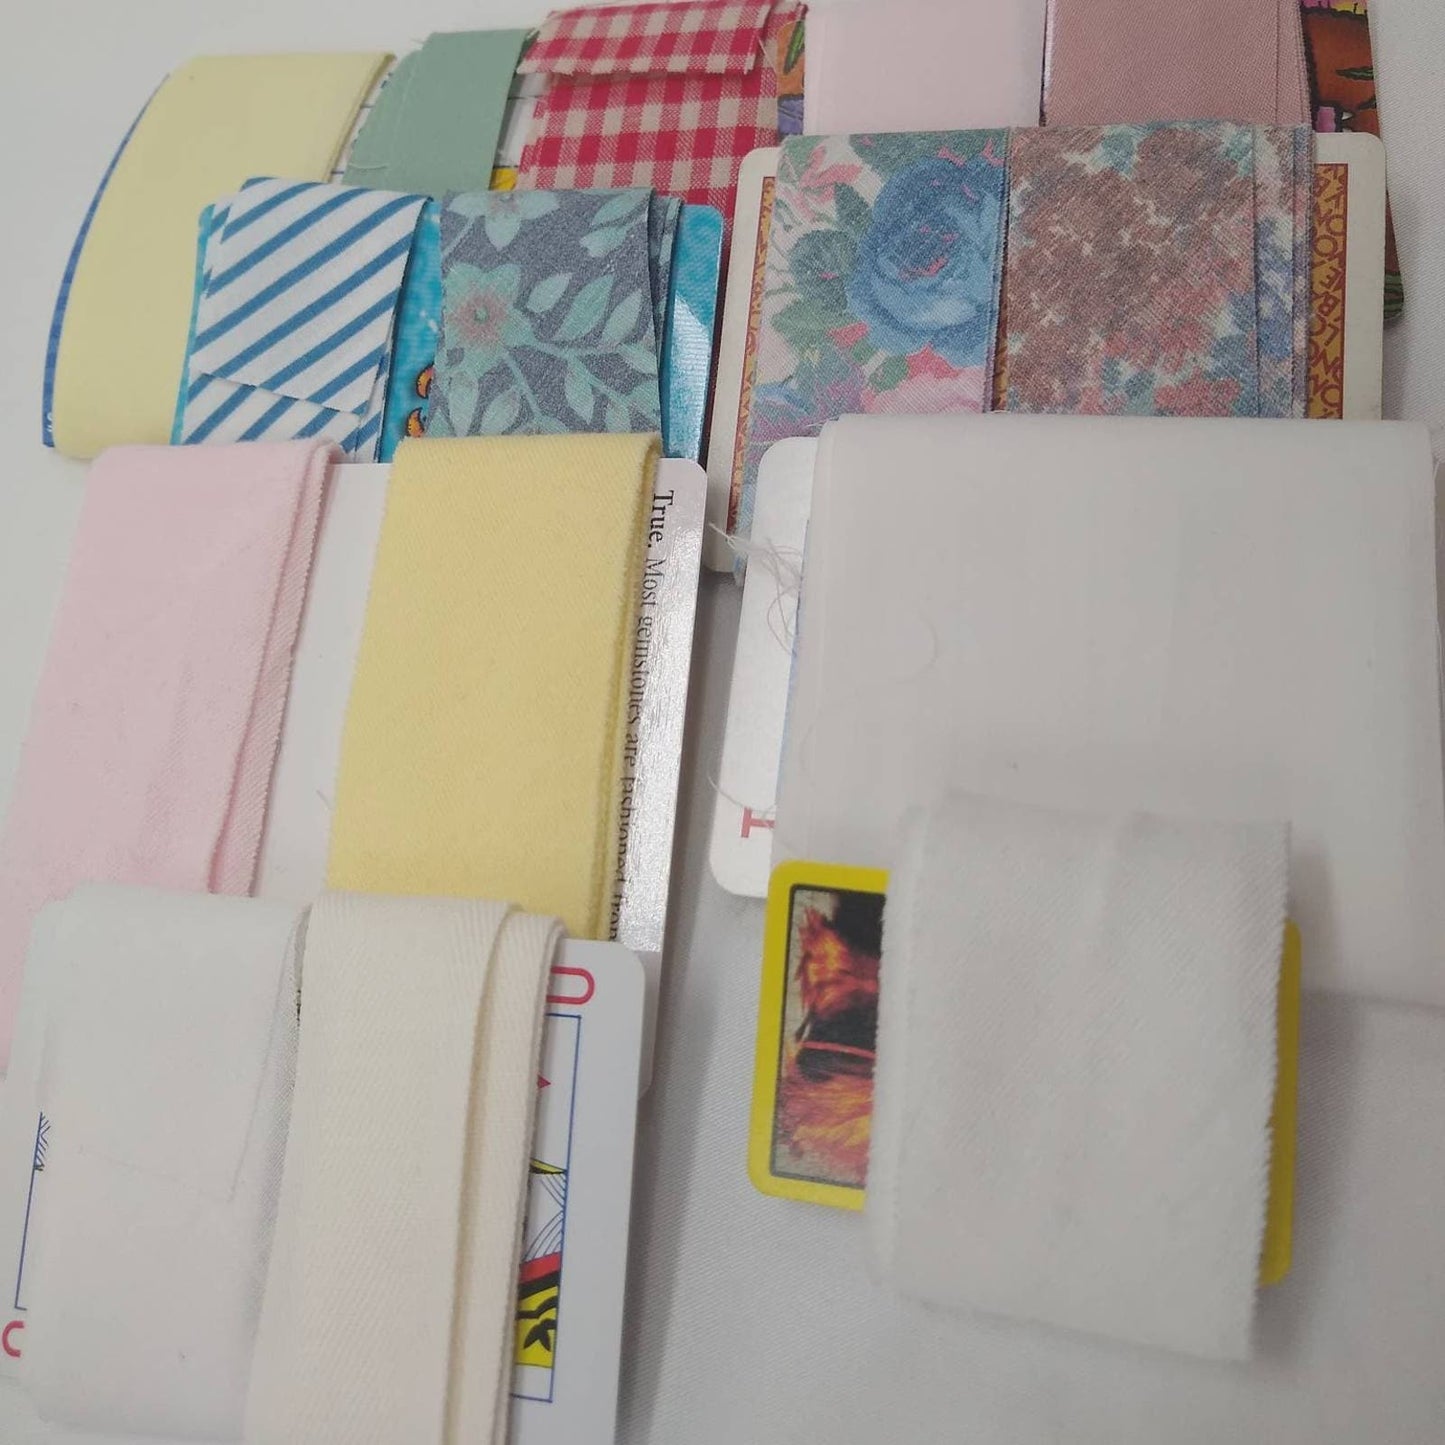 Vintage Binding Ribbon Sample Pack, 15 One Yard Pieces,Wide White Binding, Yellow Binding, Pink Binding, Flower Binding, Gingham Binding